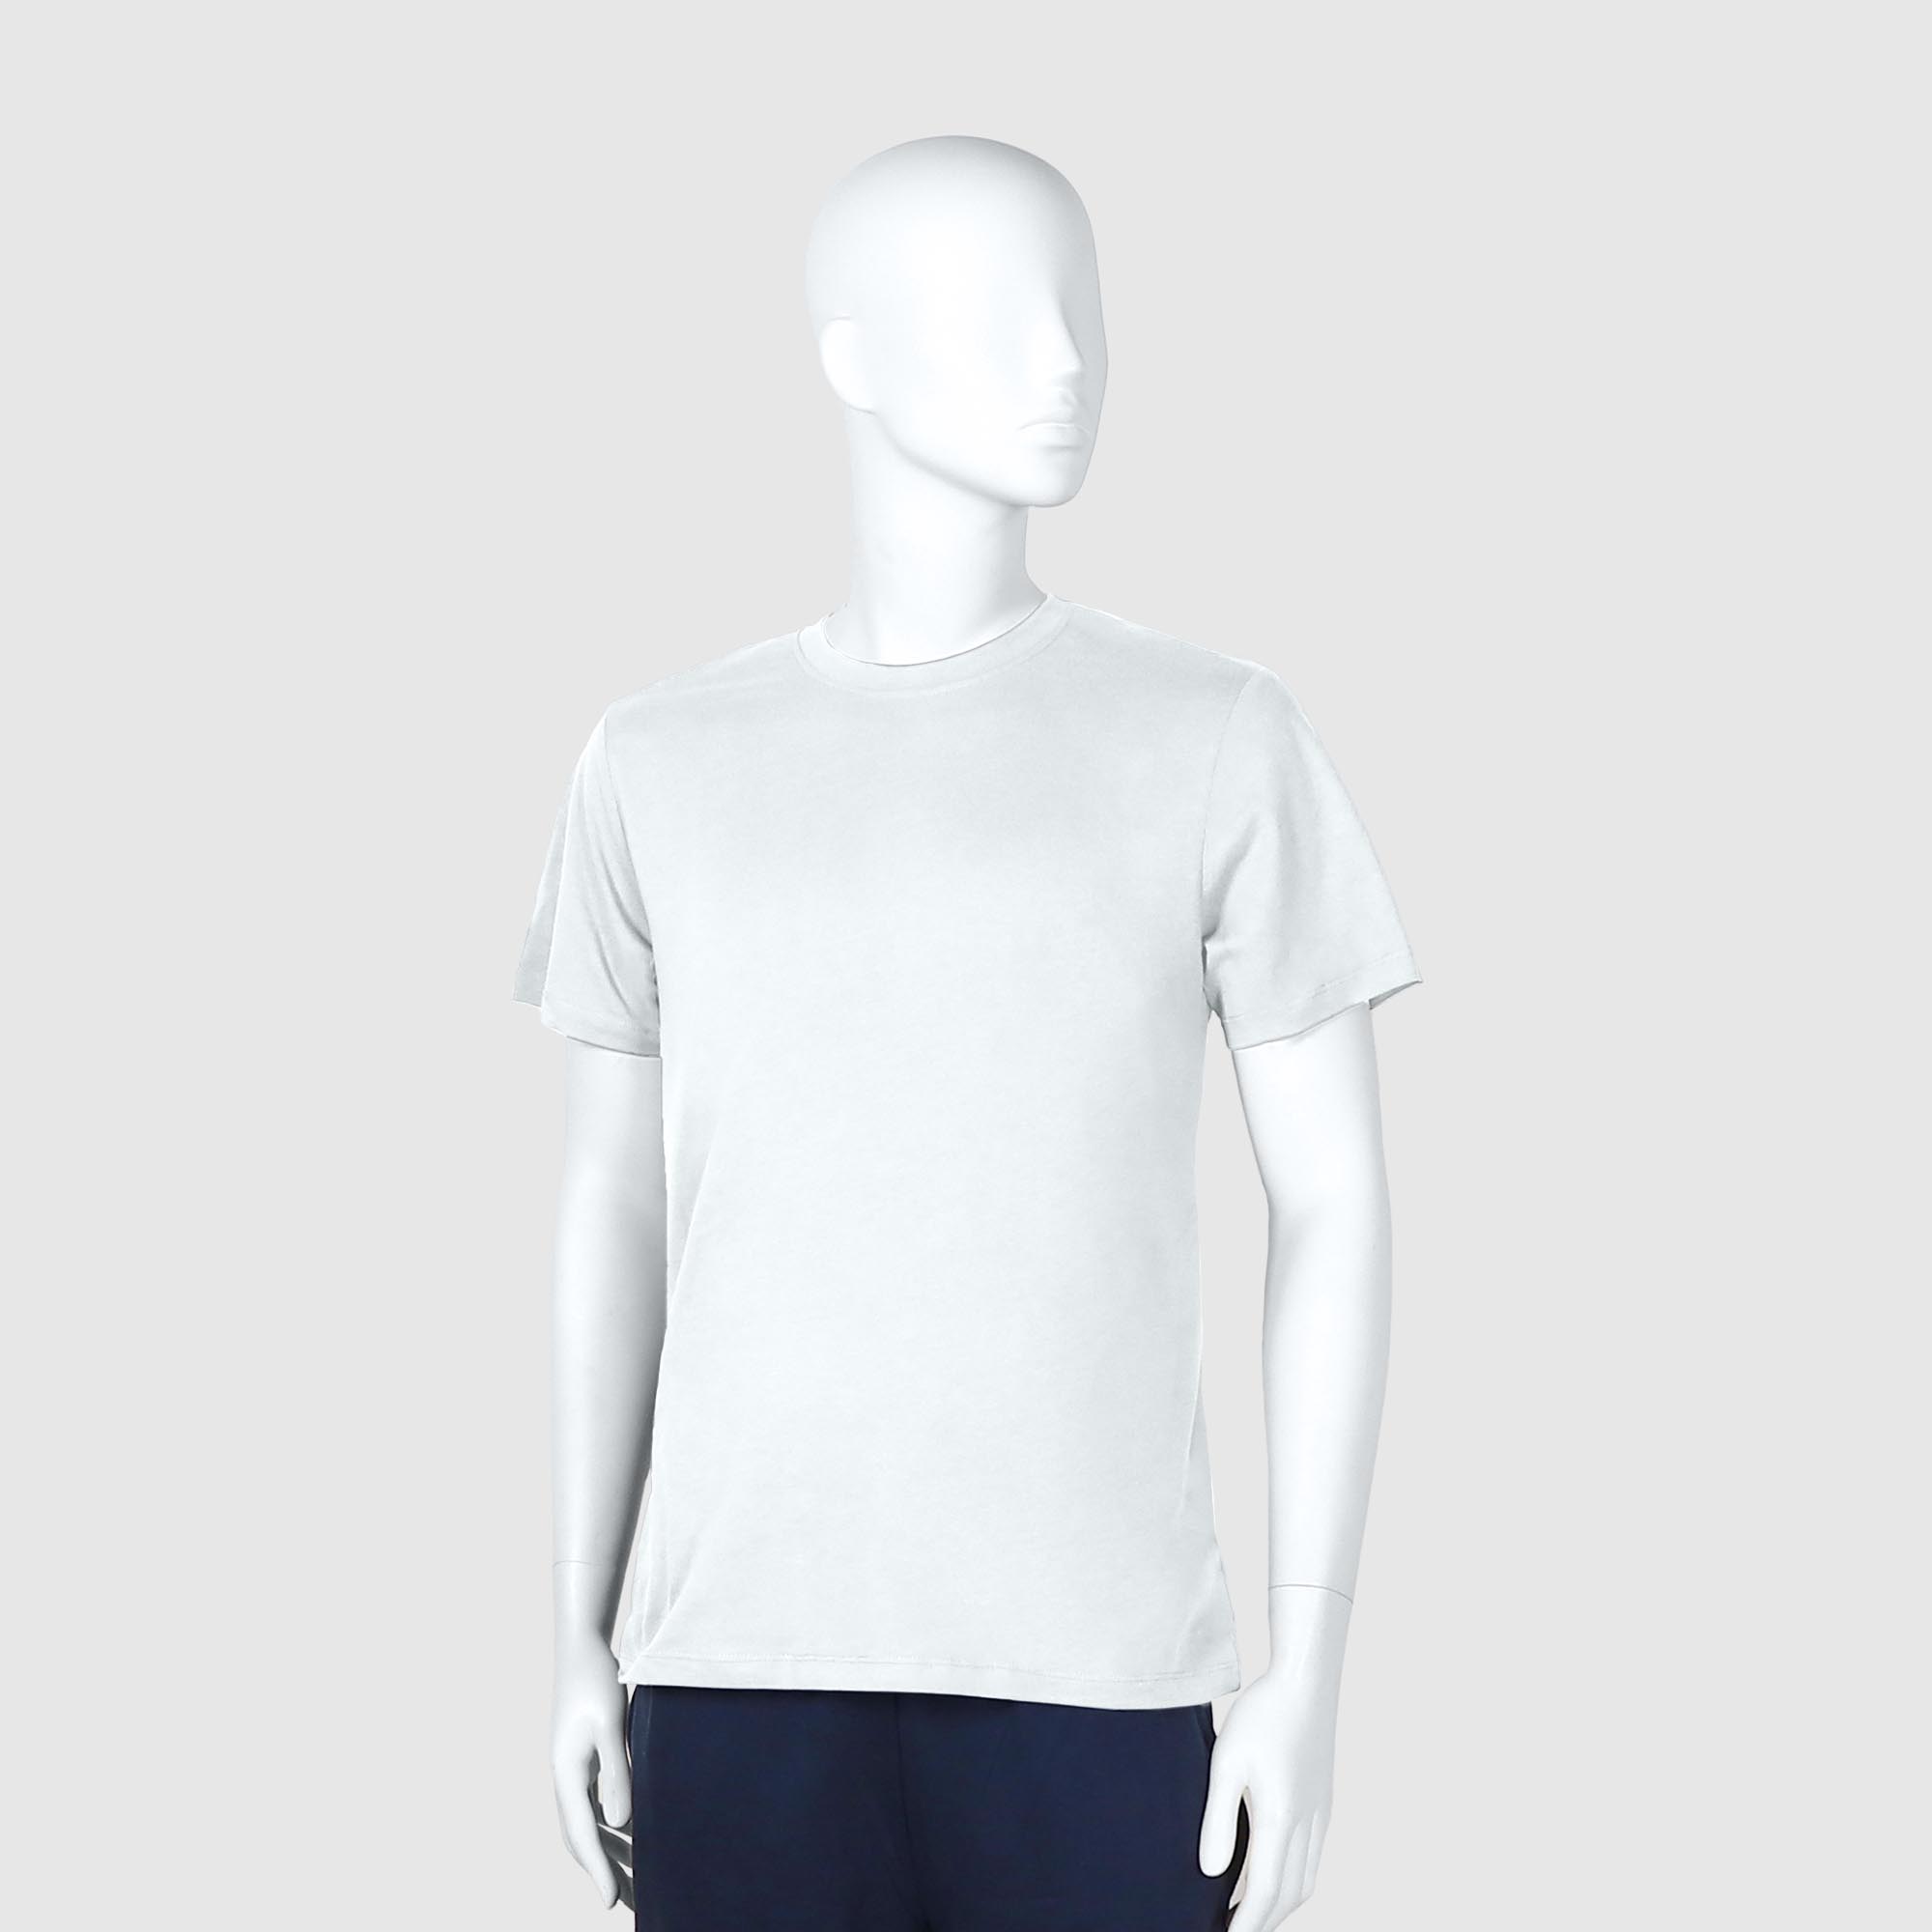 Мужская футболка Diva Teks белая (DTD-02), цвет белый, размер 44-46